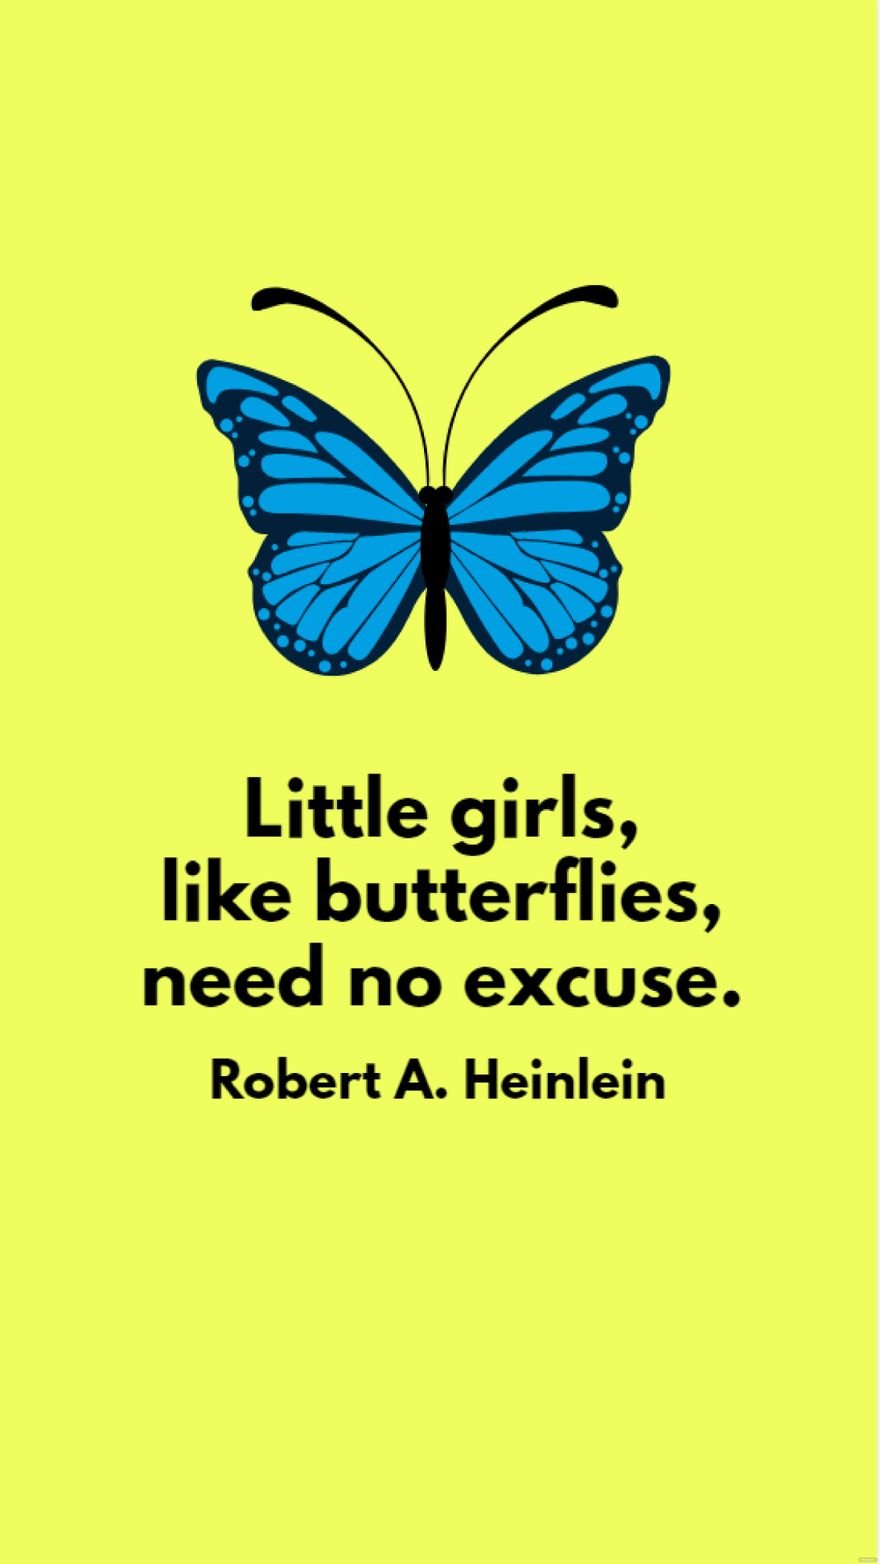 Robert A. Heinlein - Little girls, like butterflies, need no excuse.